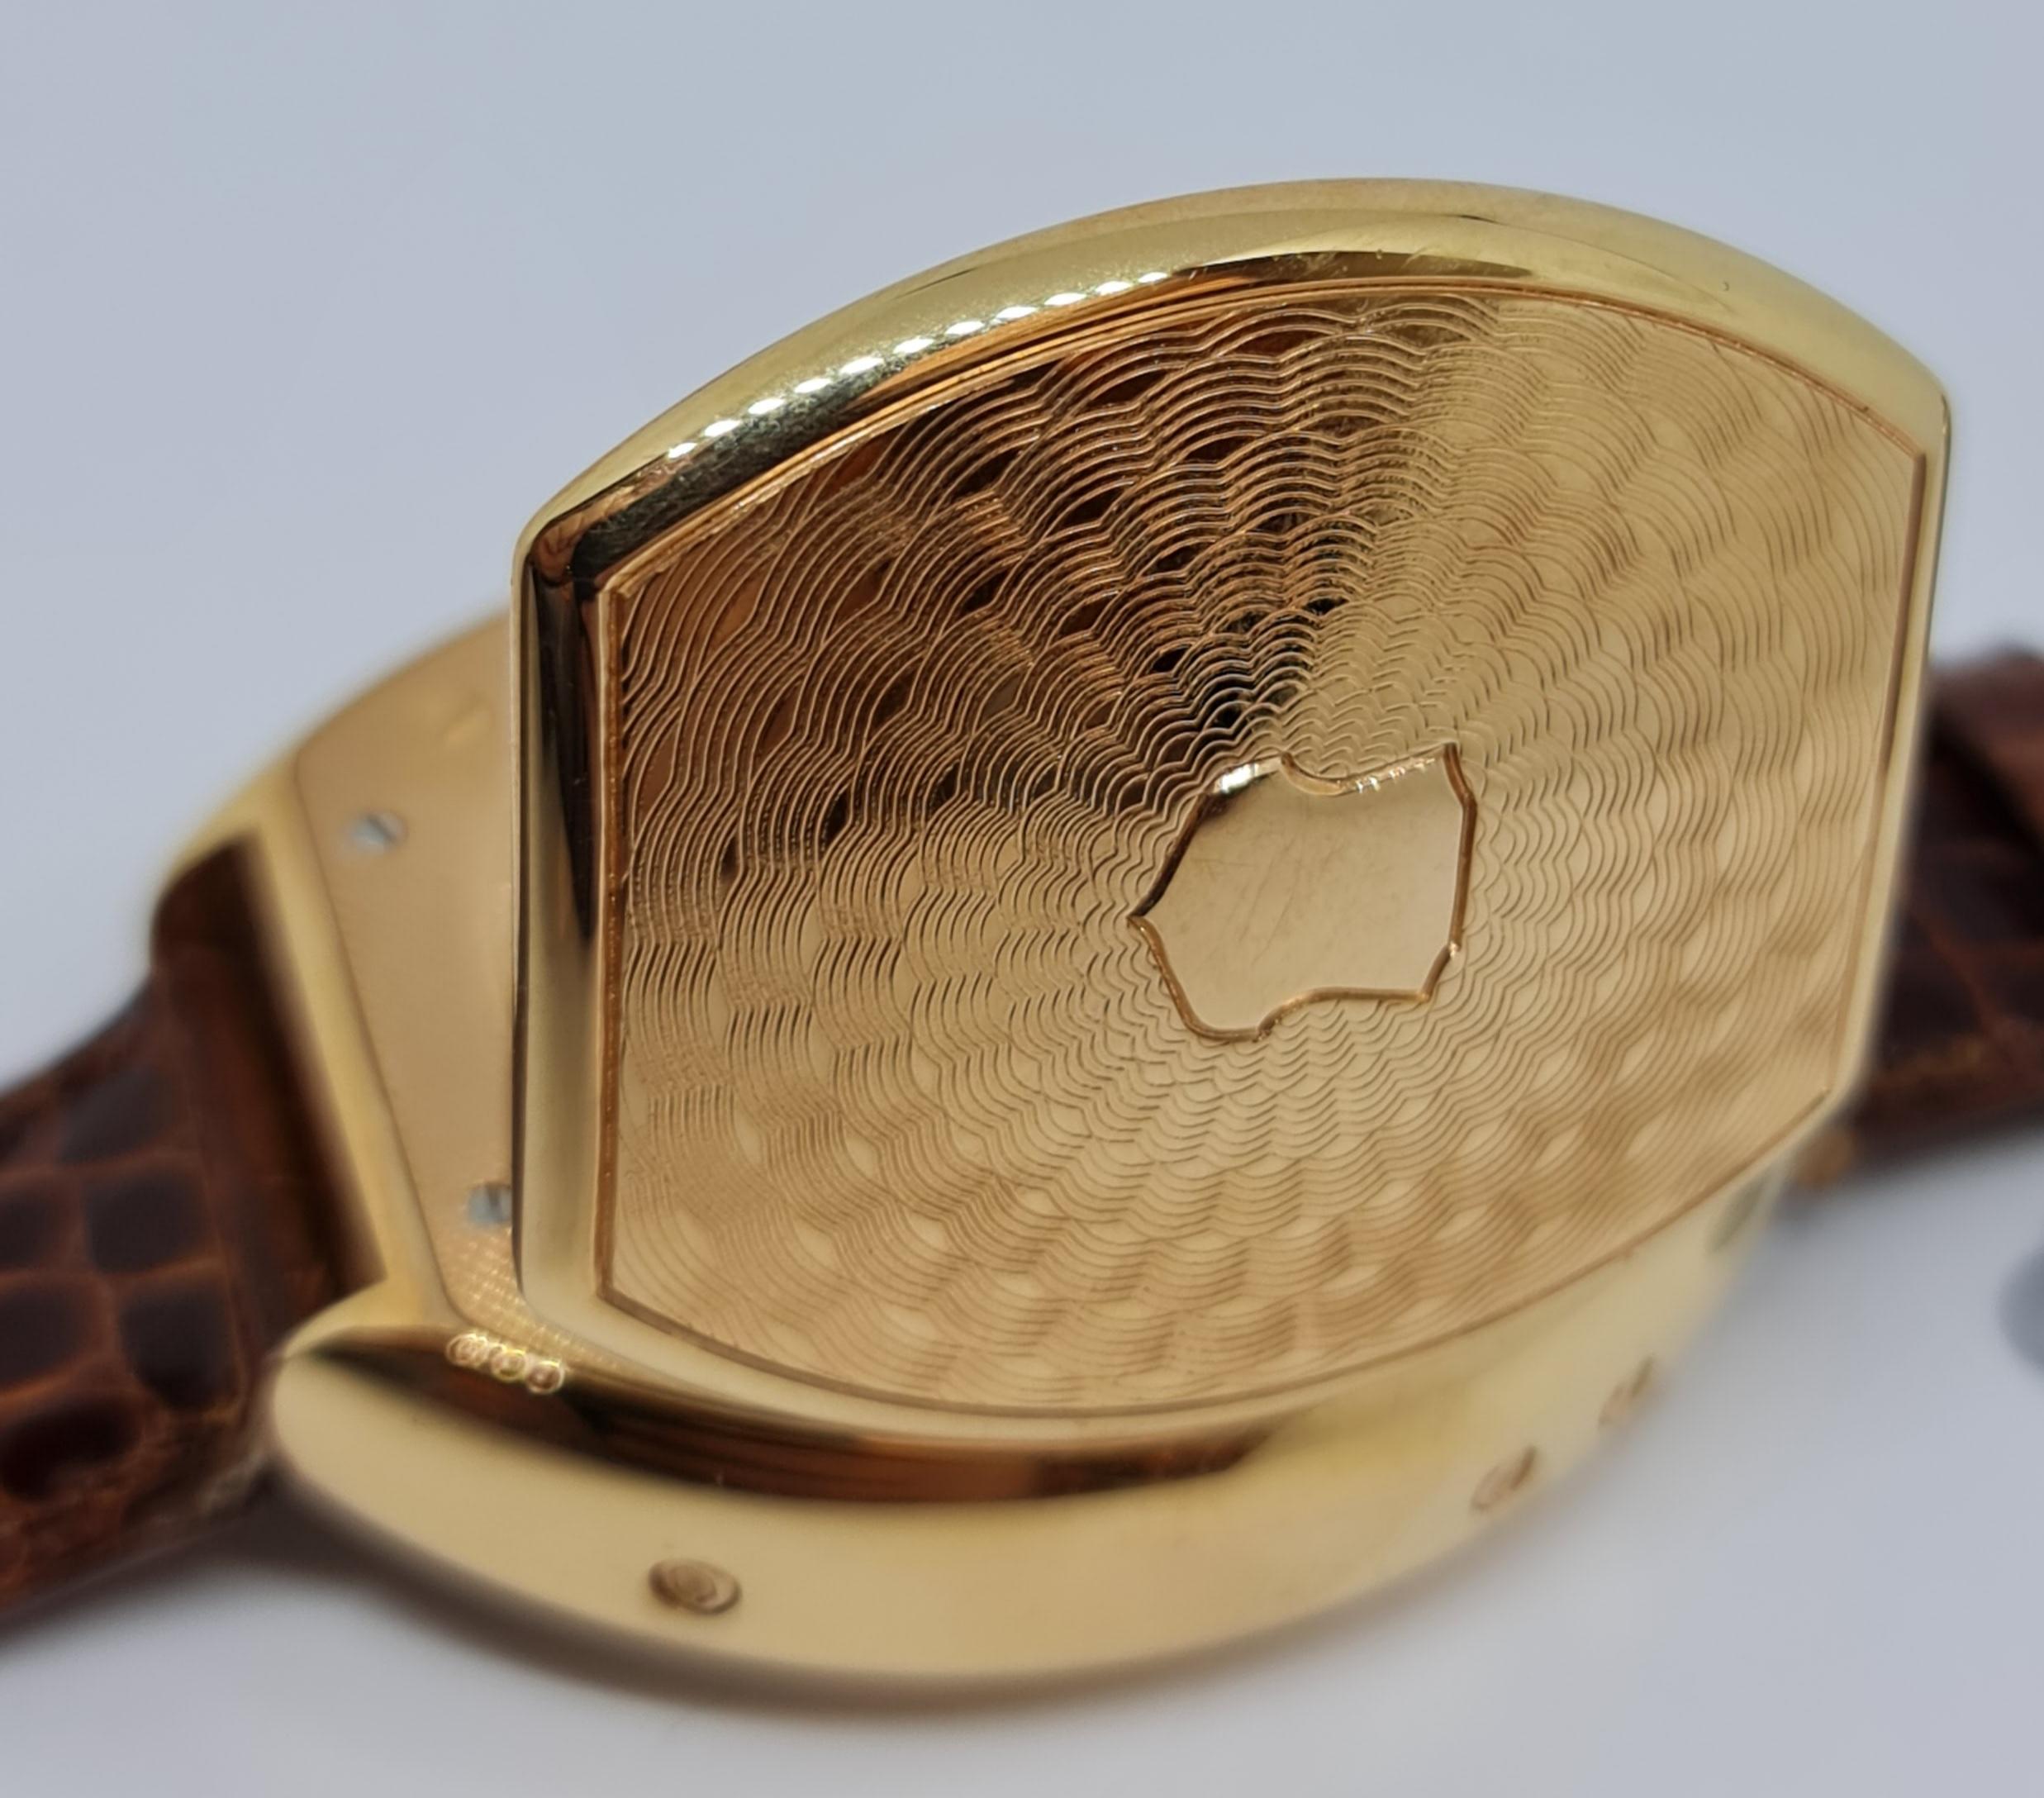 Pink Gold Van Der Bauwede Quantième annuel 4saisons Wrist Watch- Limited Edition For Sale 4